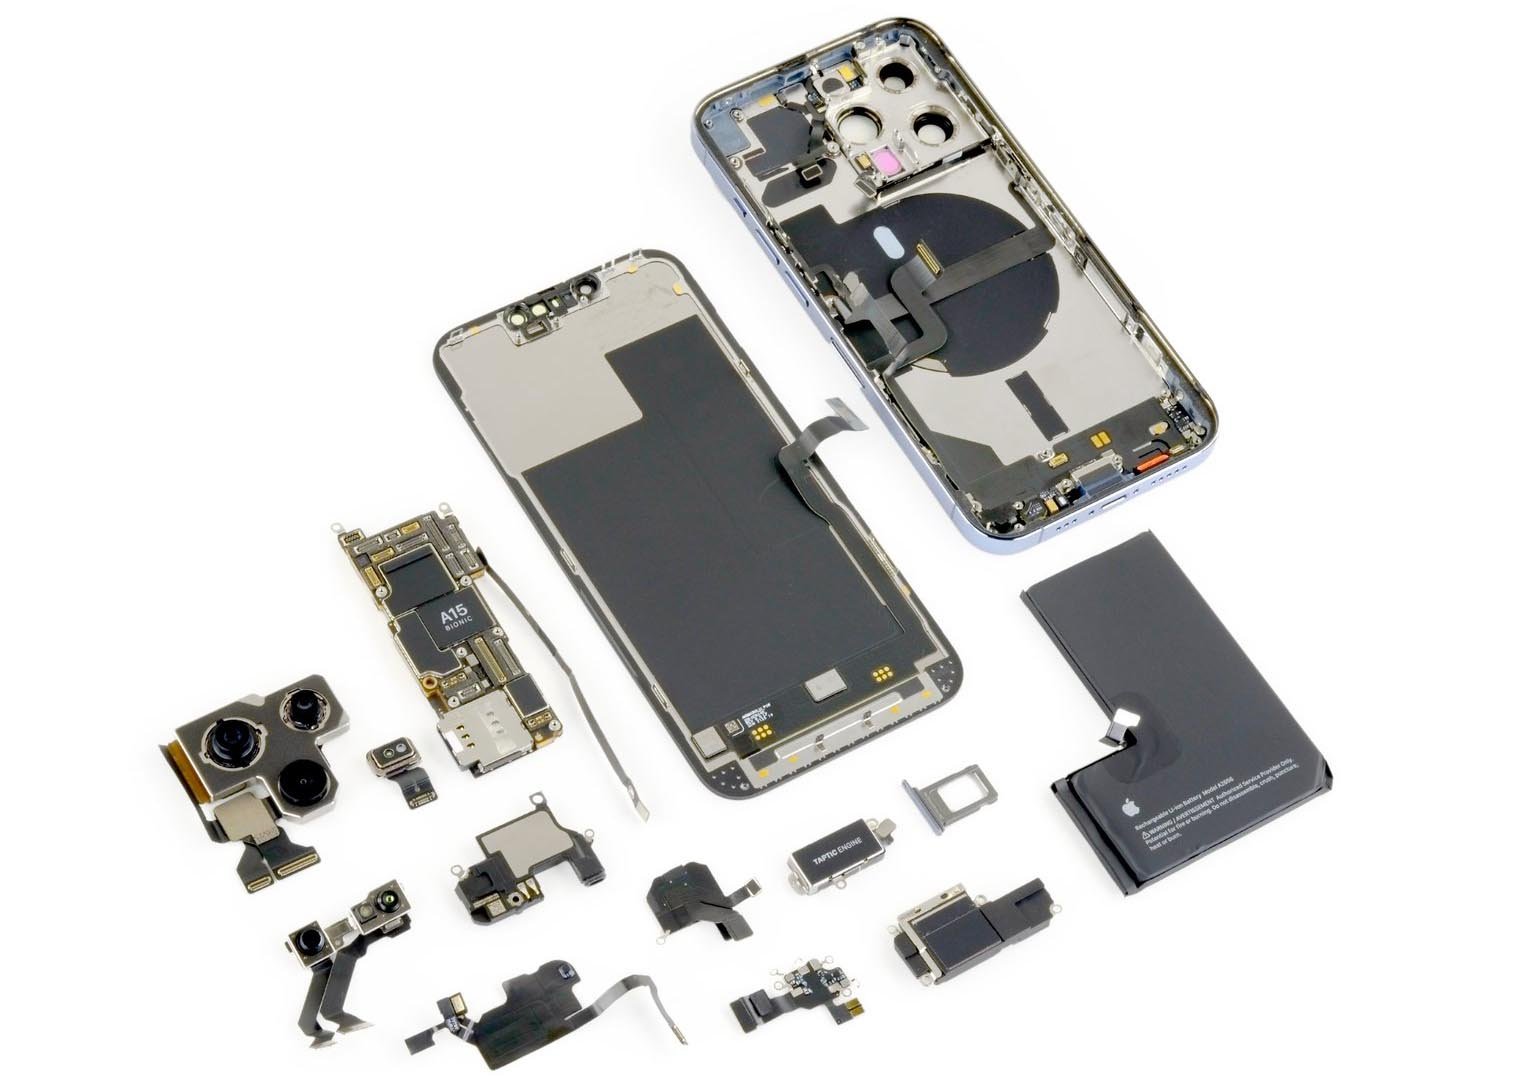 Componentes internos do iPhone 13 Pro, revelados na análise do iFixit. (Fonte: WCCF Tech, iFixit / Reprodução)